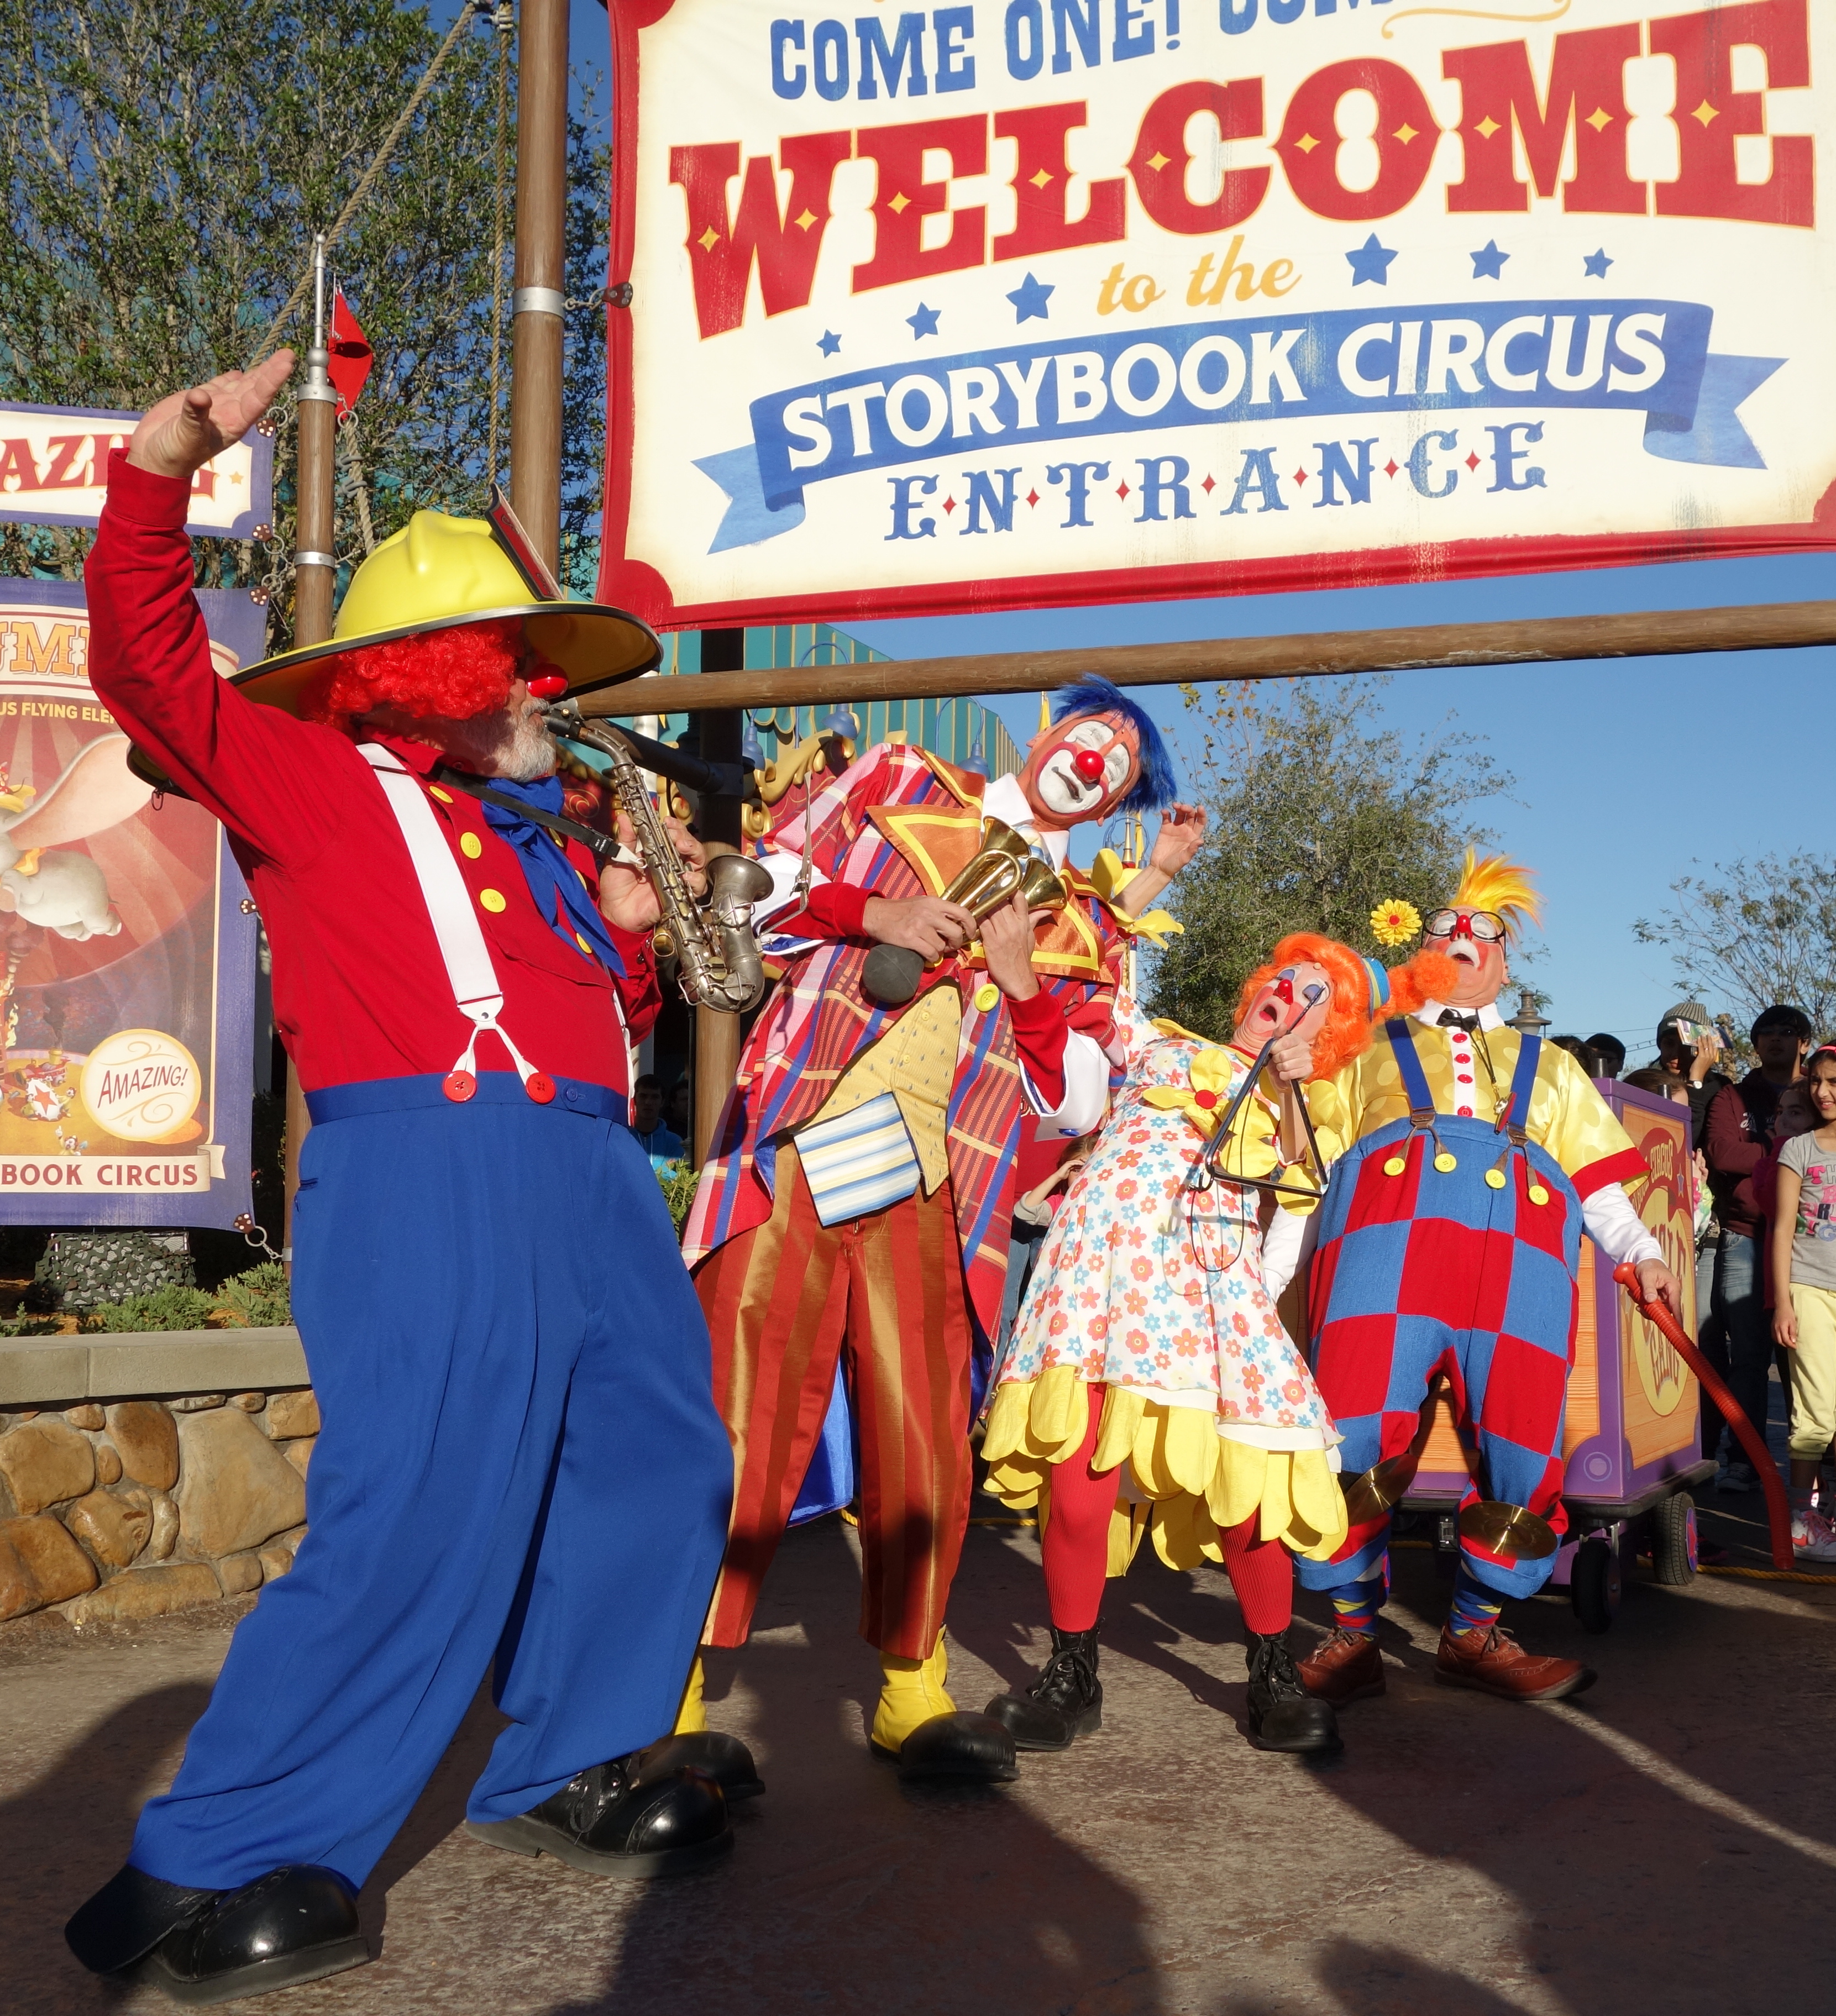 Storybook Giggle Gang in Storybook Circus at the Magic Kingdom